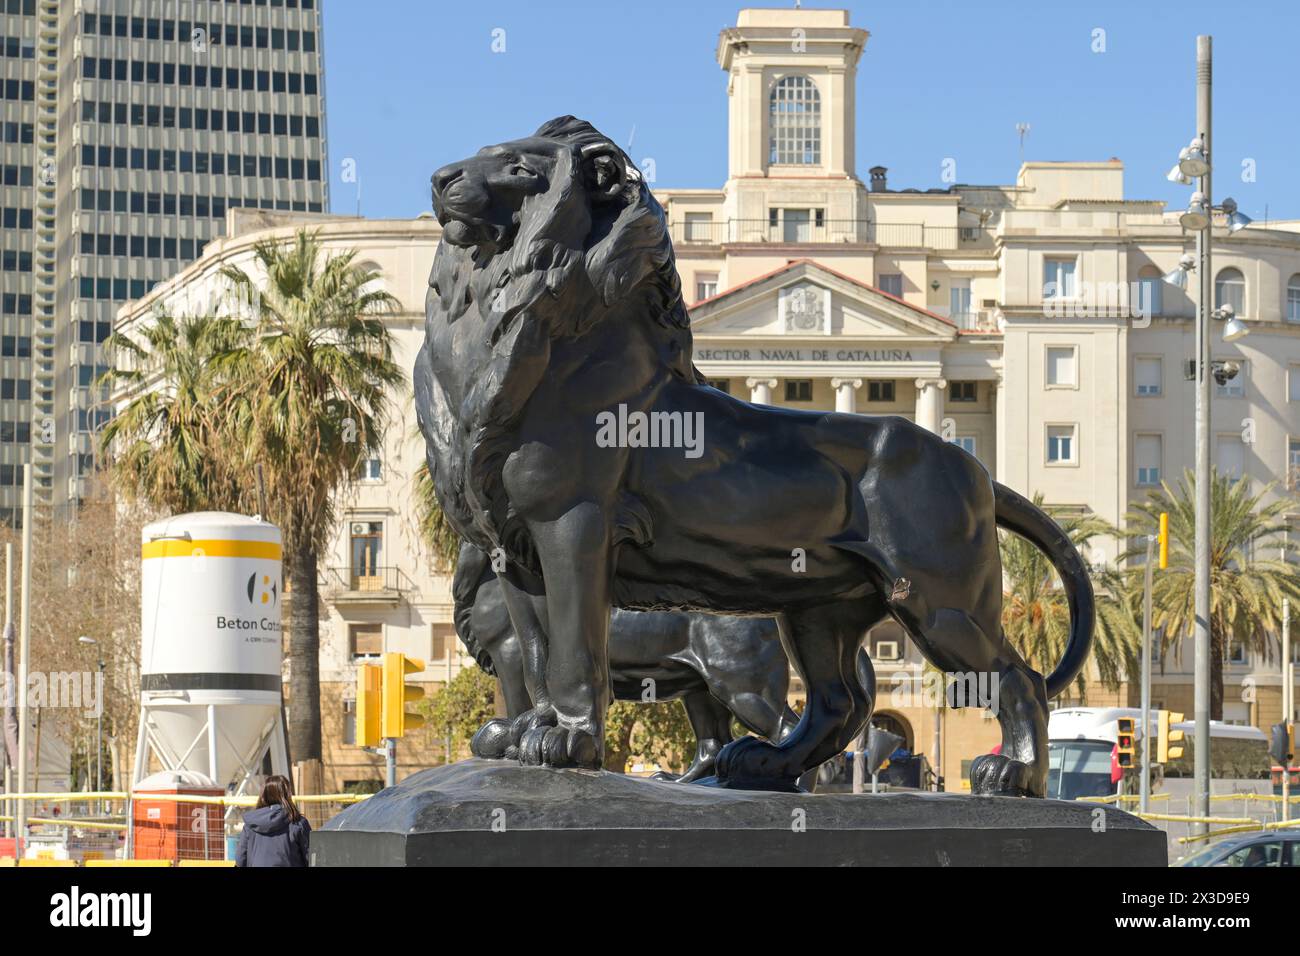 Bronzelöwen, Monument a Colom, Barcelone, Katalonien, Espagne Banque D'Images